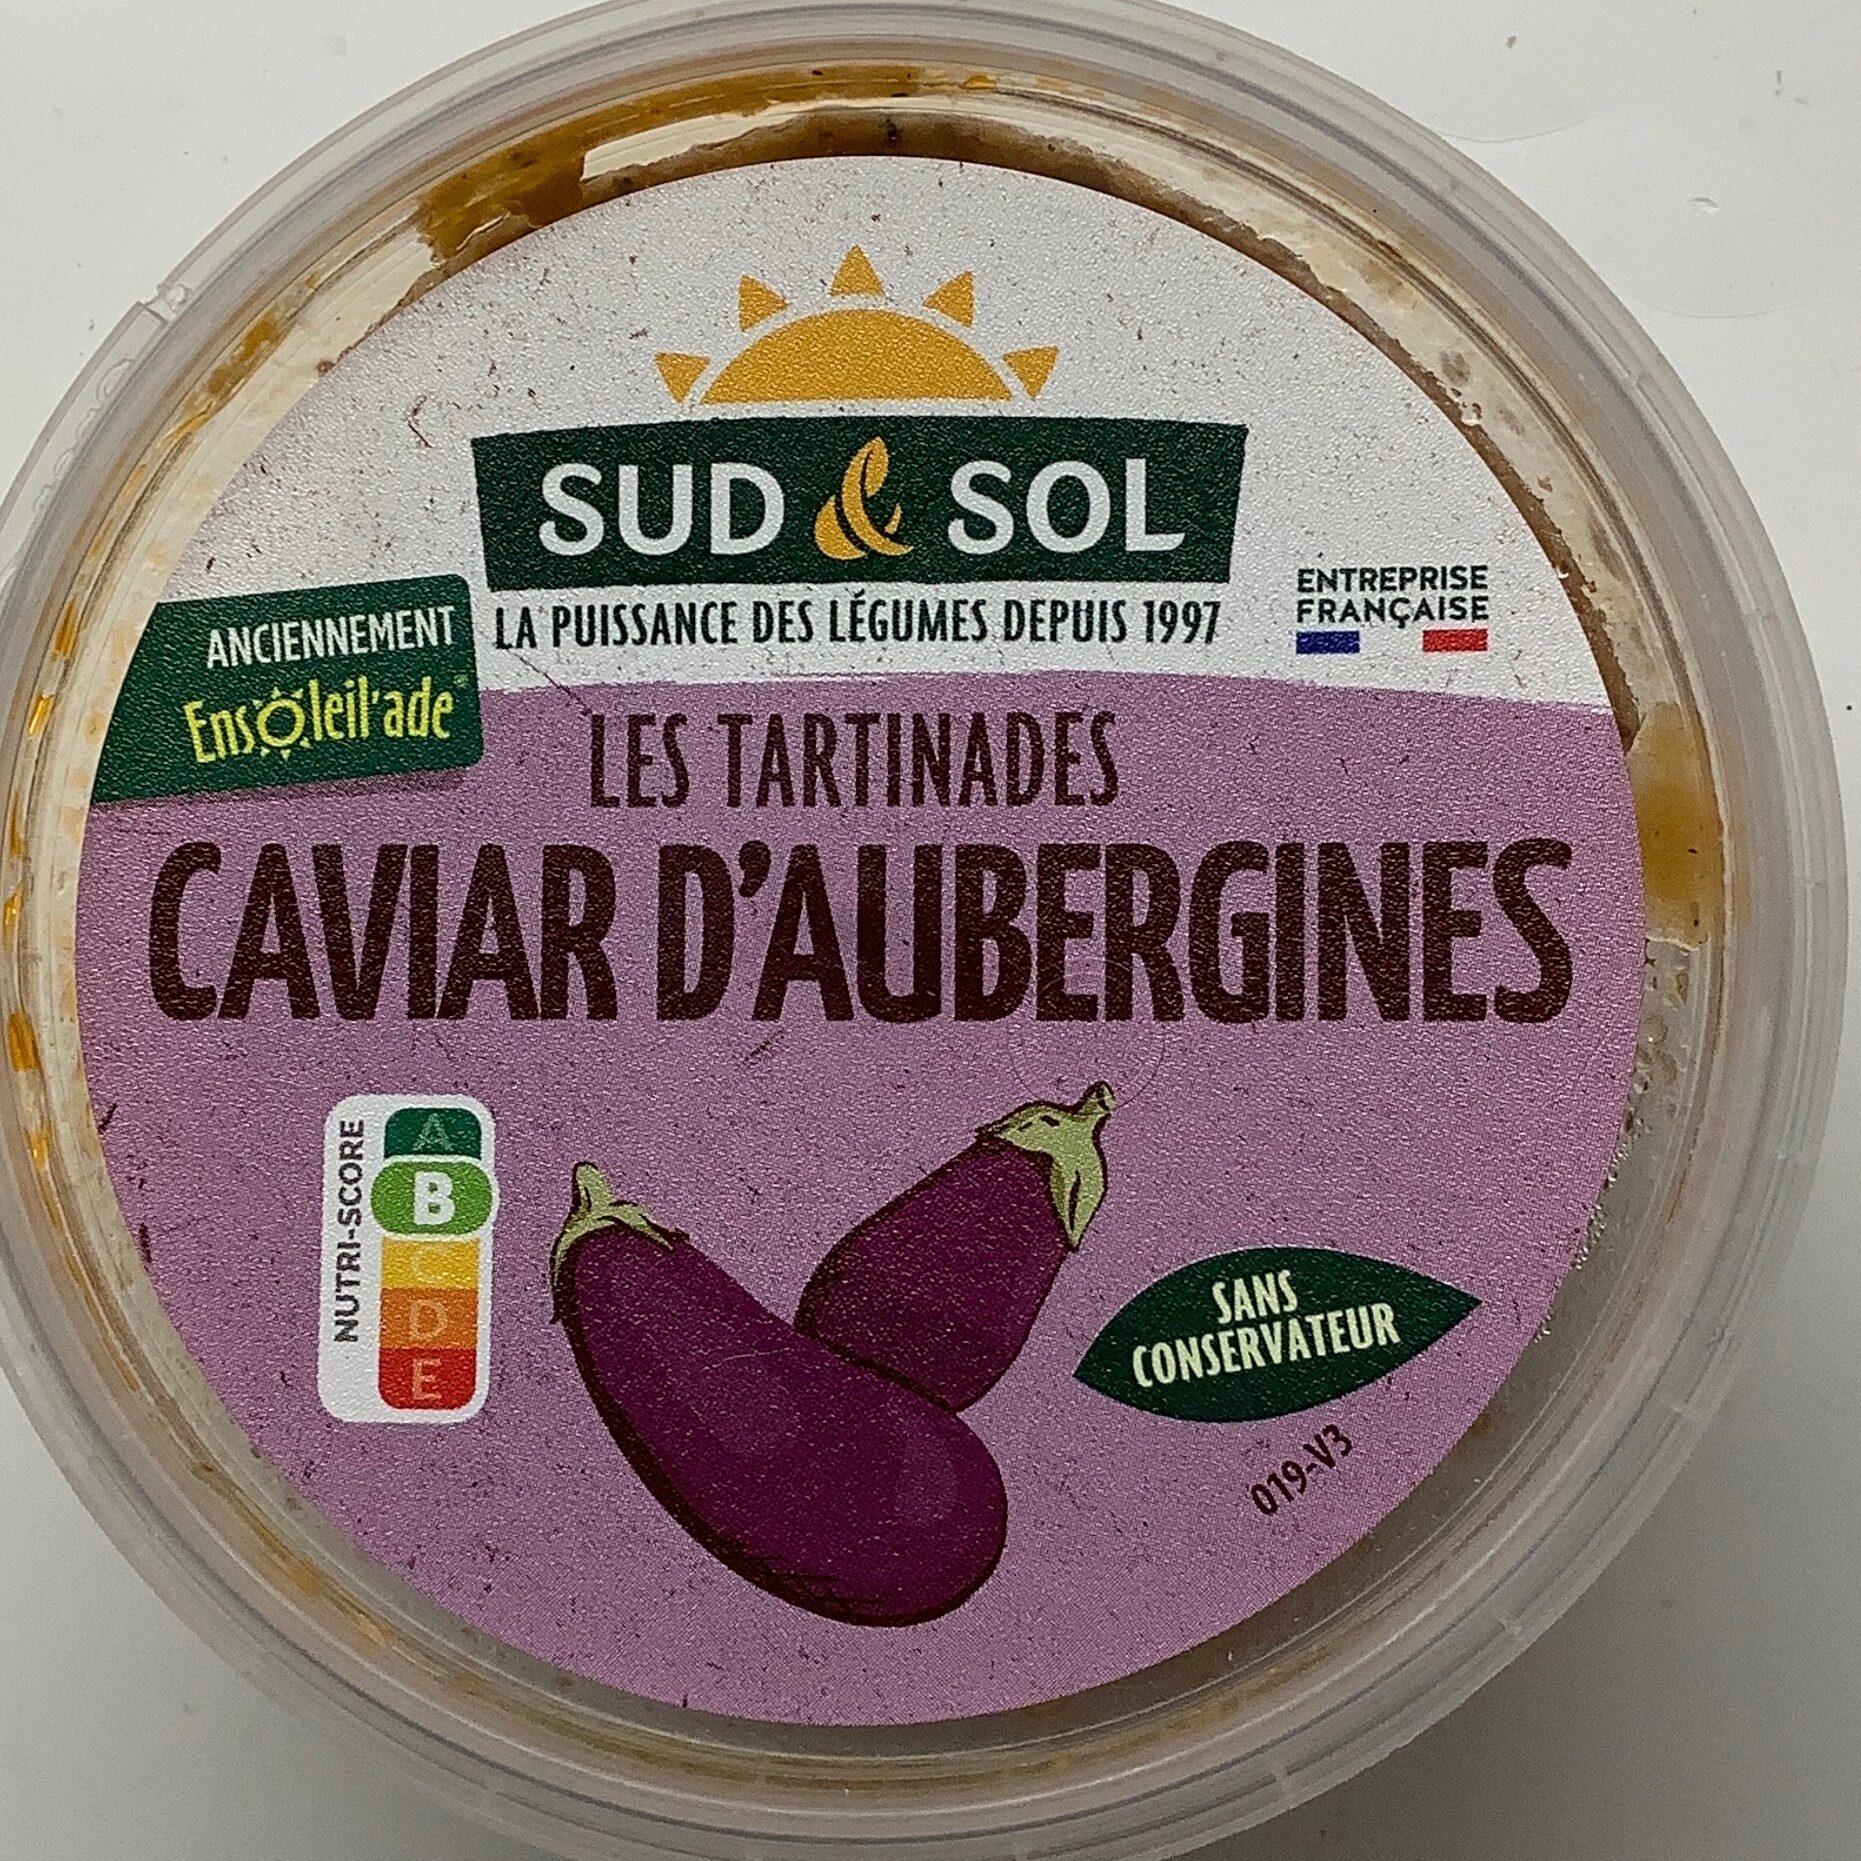 Caviar d’aubergines - Prodotto - fr